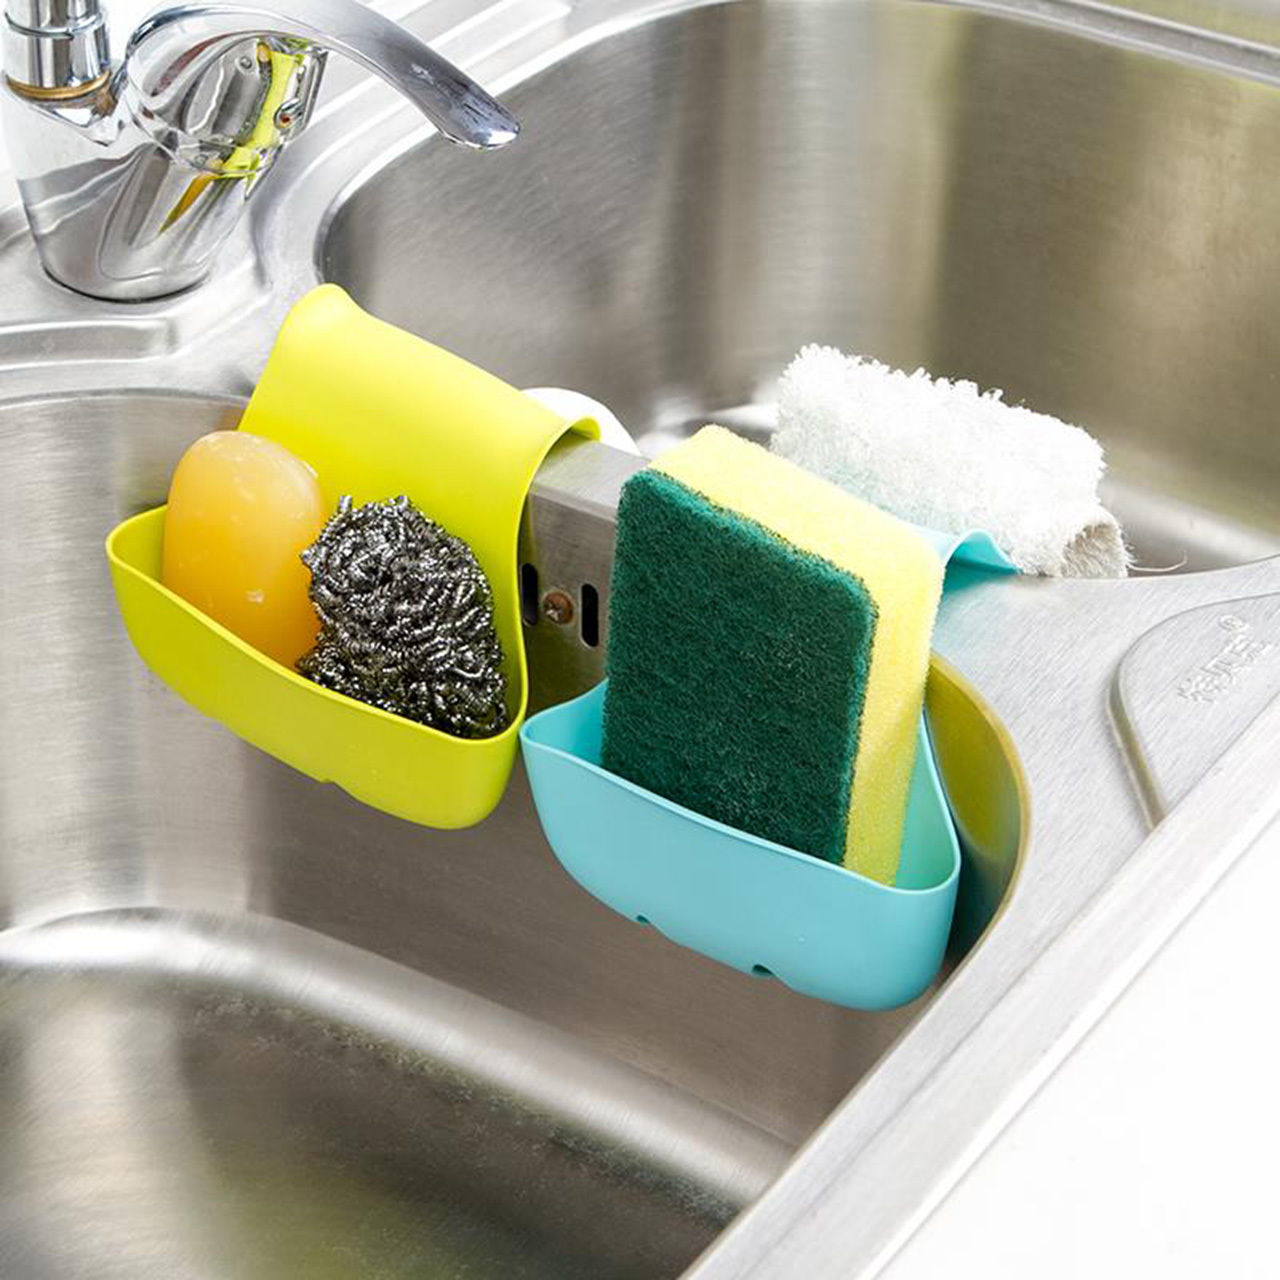 Губка мытья средств. Приспособление для мытья посуды. Губка для мытья. Для губки на кухню. Красивые губки для мытья посуды.